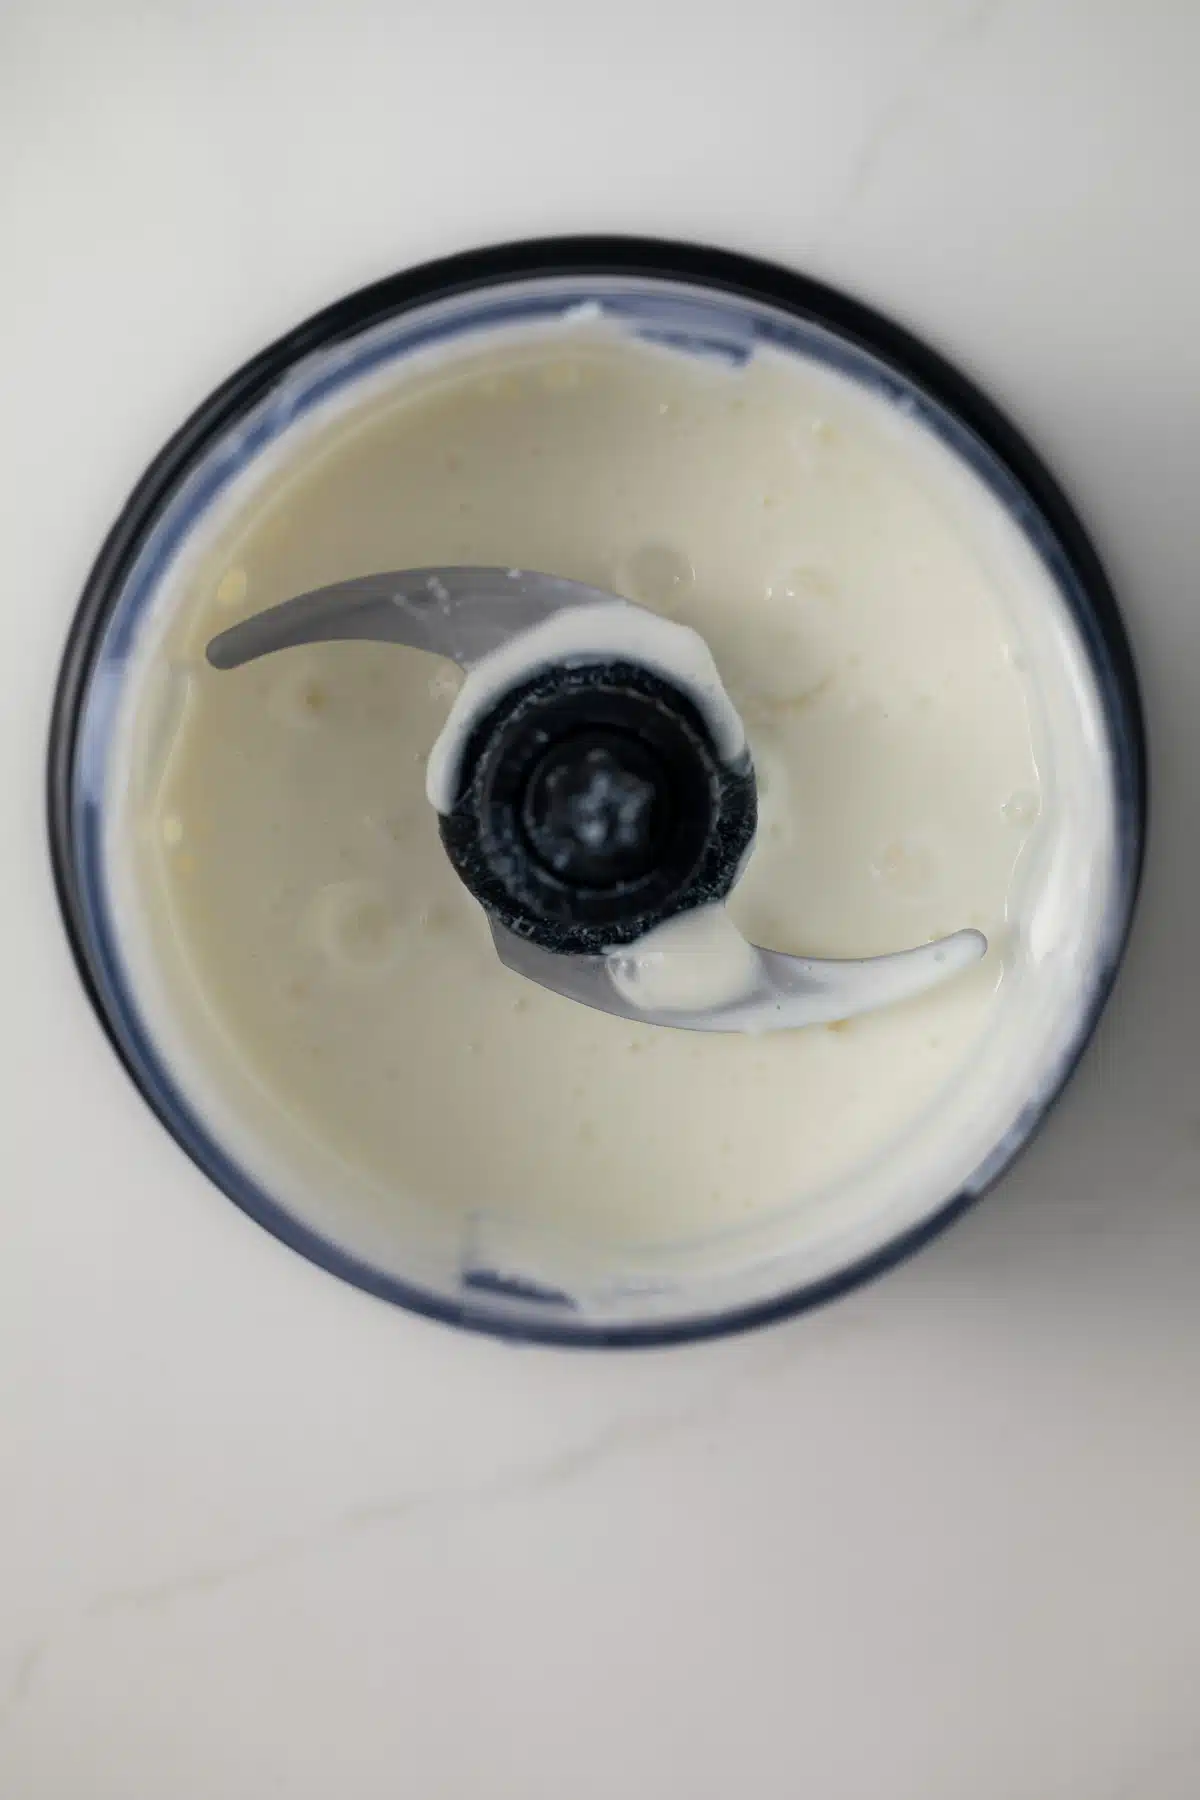 Yogurt garlic sauce in blender bowl.